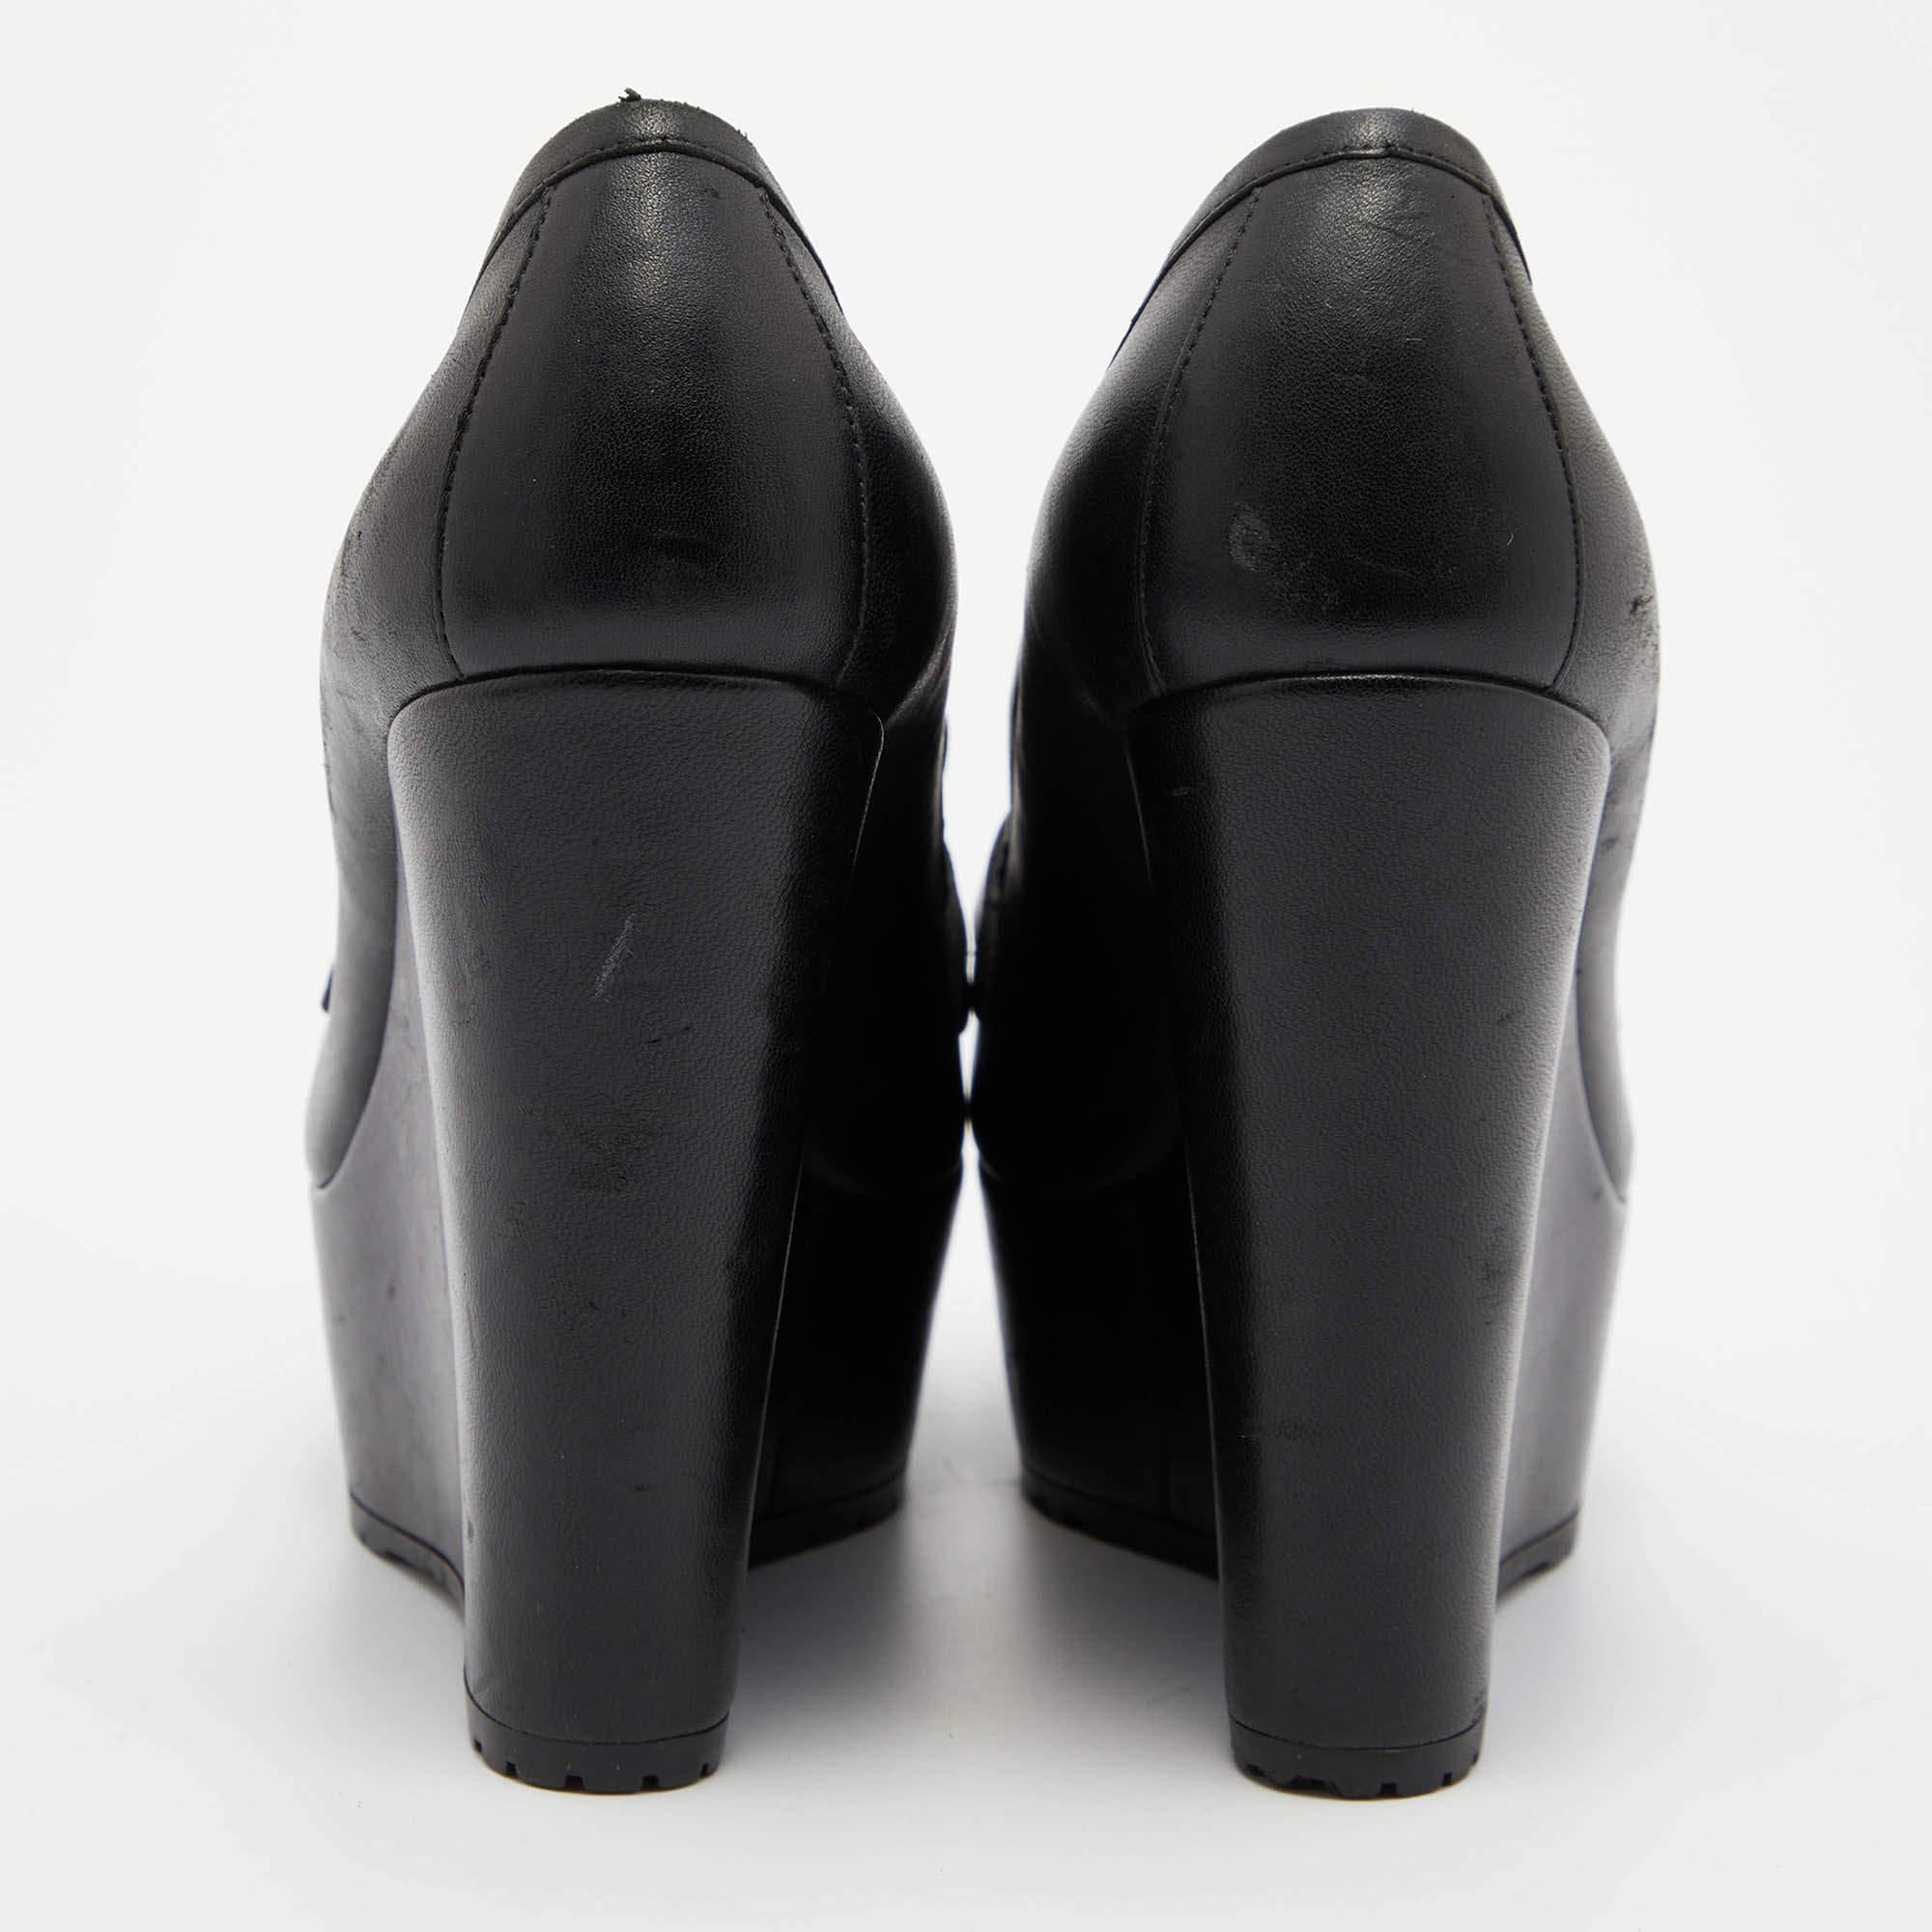 Gianvito Rossi Black Leather Tassel Wedge Pumps Size 37.5 In Good Condition For Sale In Dubai, Al Qouz 2